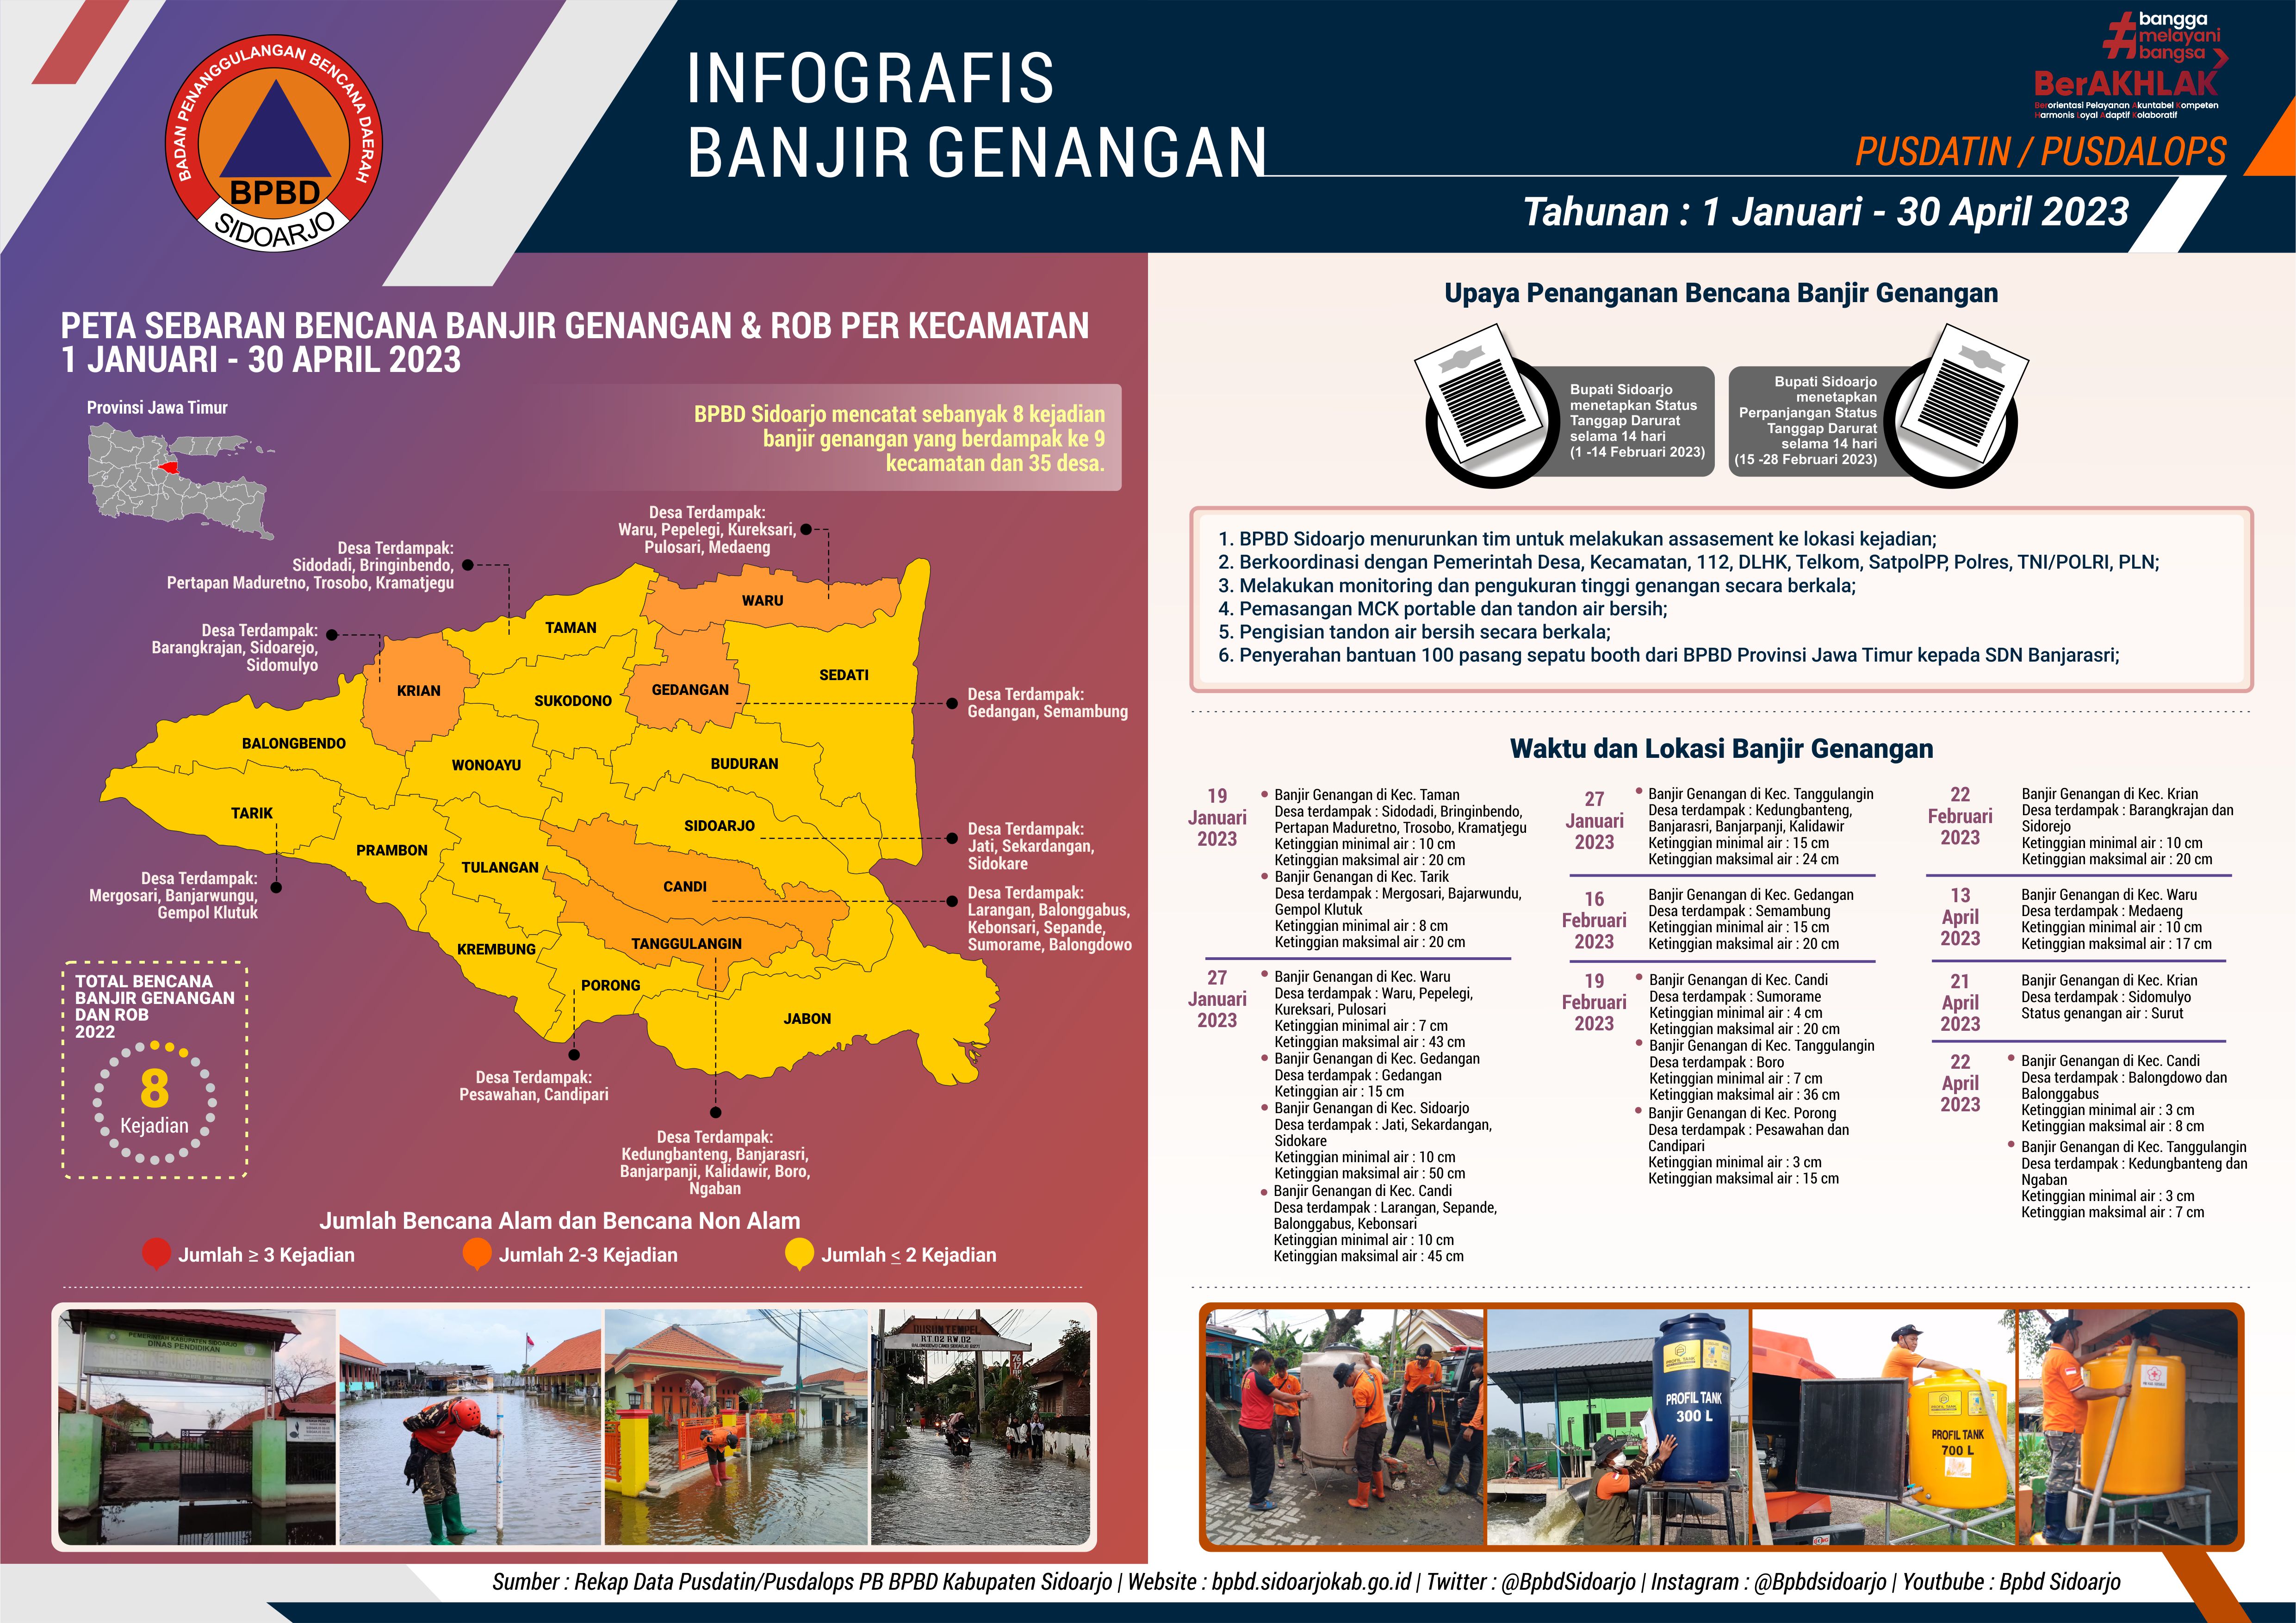 Infografis Tahunan Berjalan Kejadian Banjir Genangan Bulan Januari – April 2023